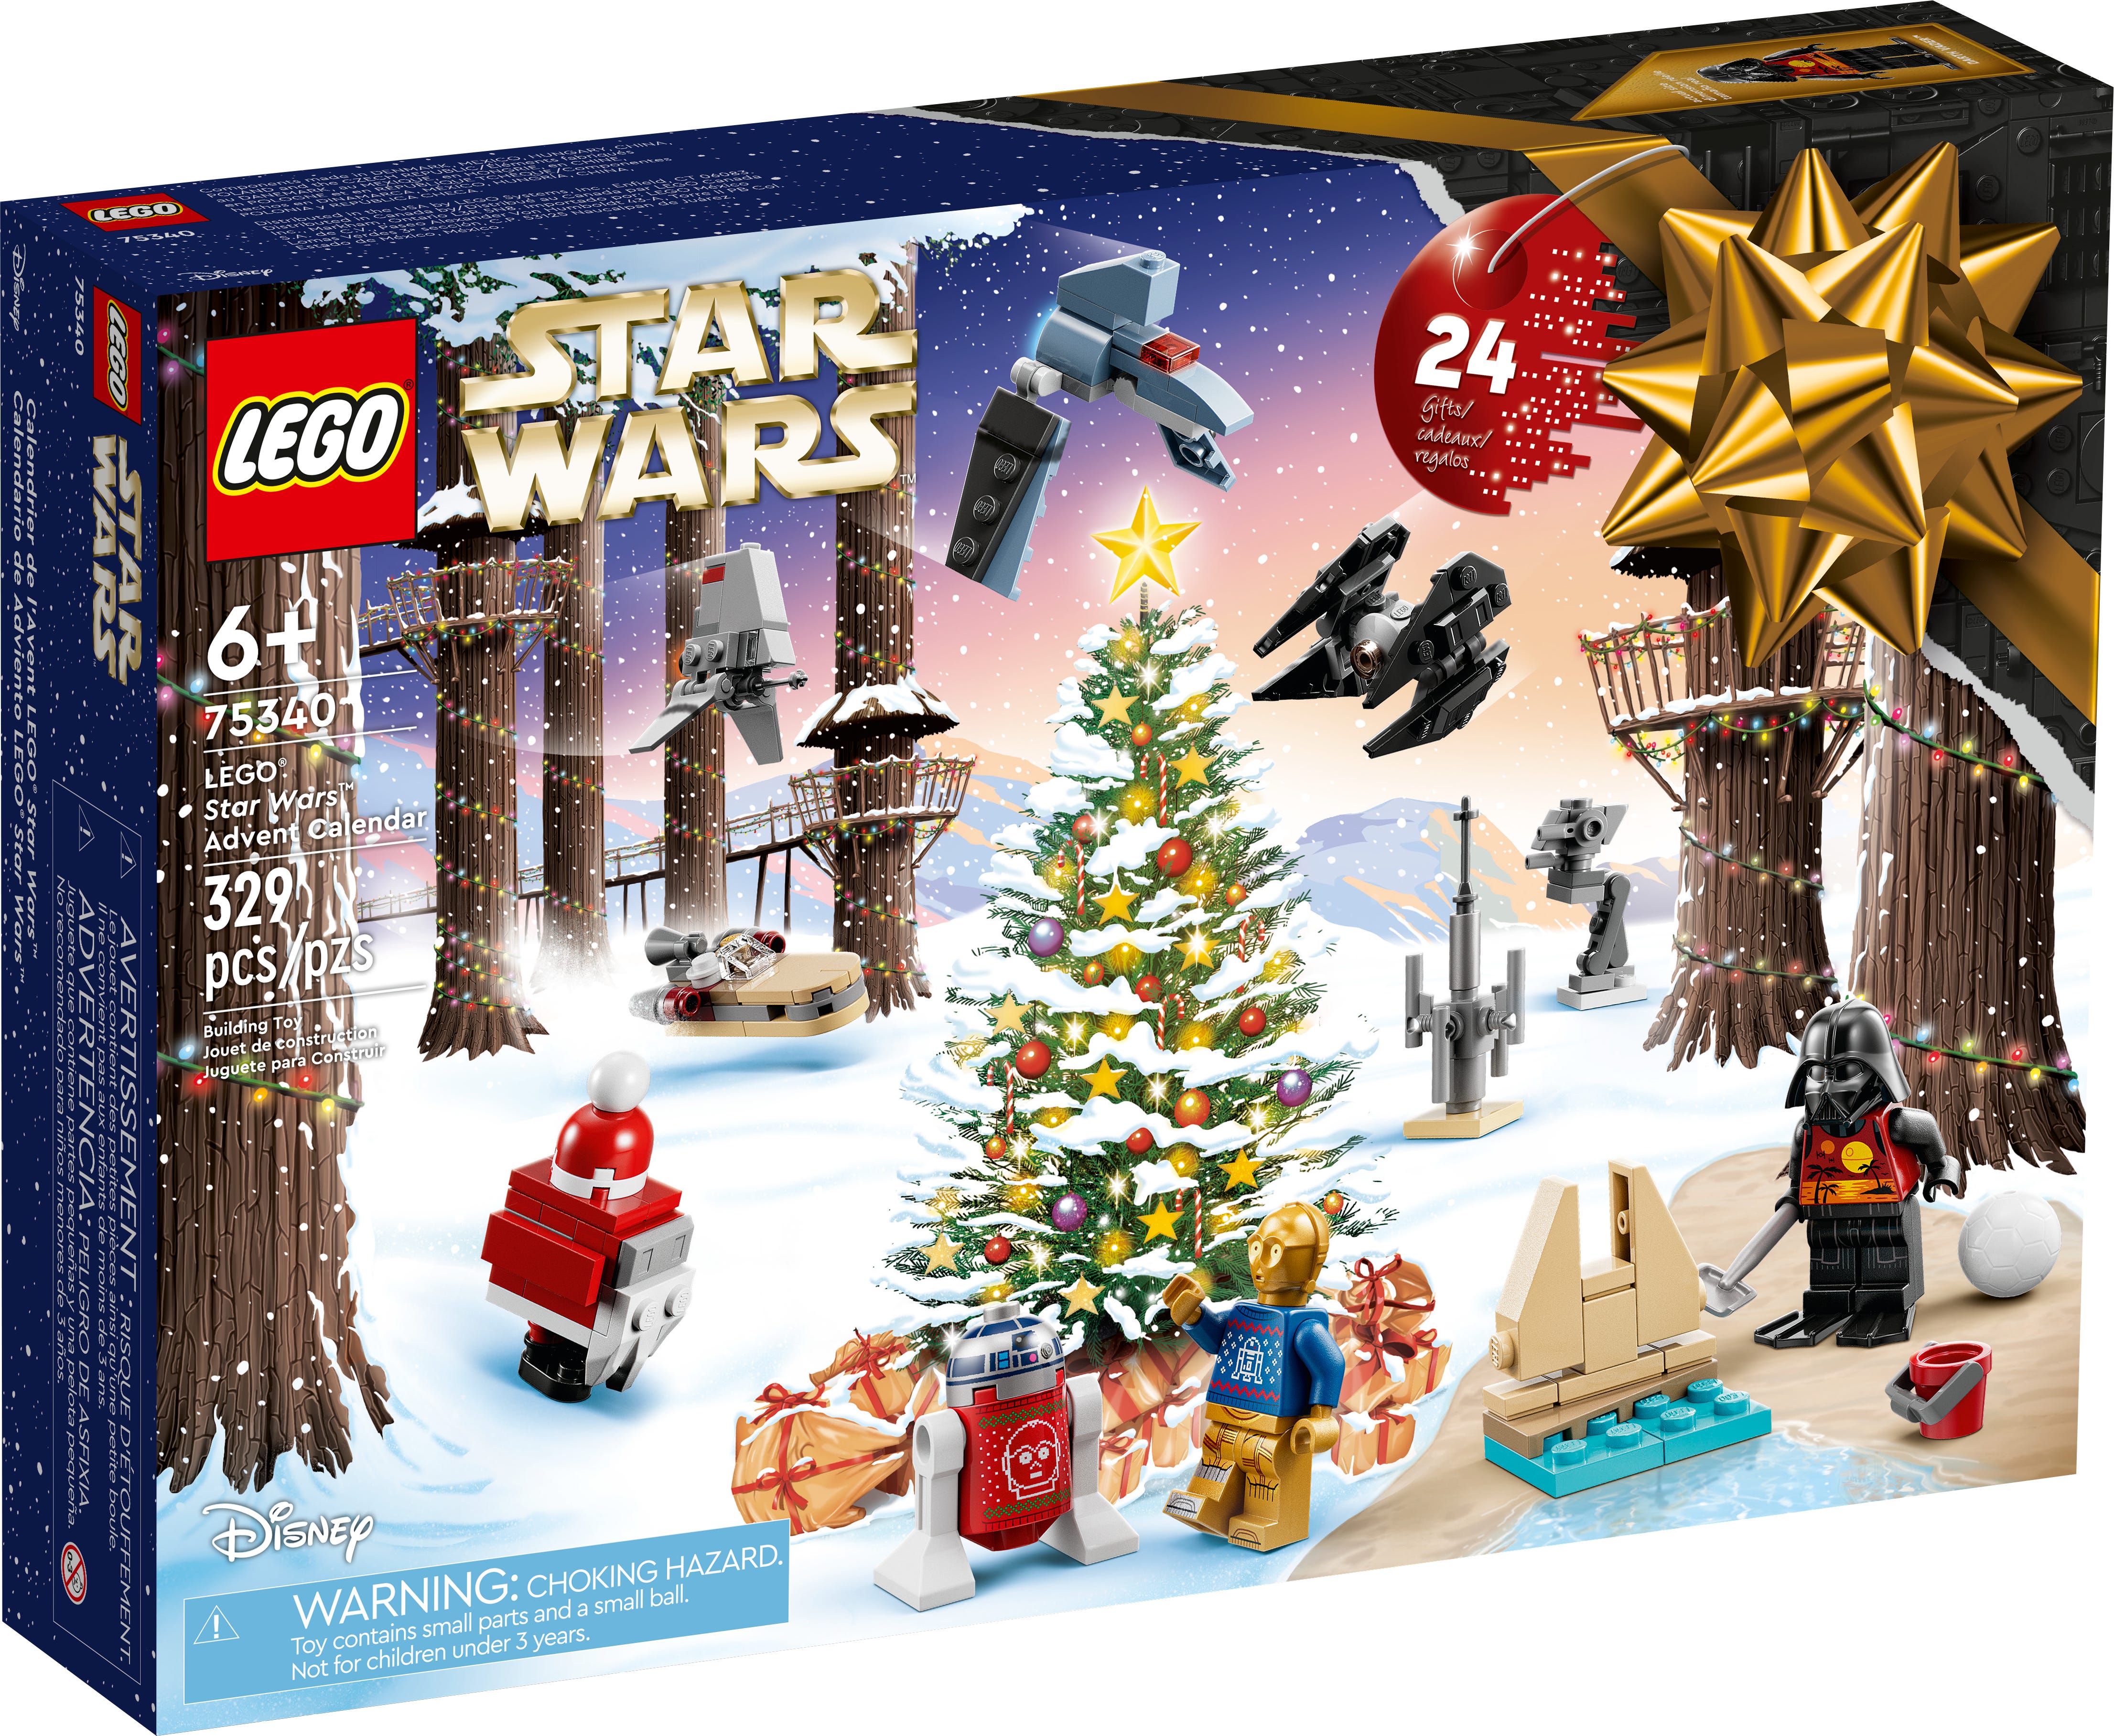 LEGO Star Wars" Advent Calendar